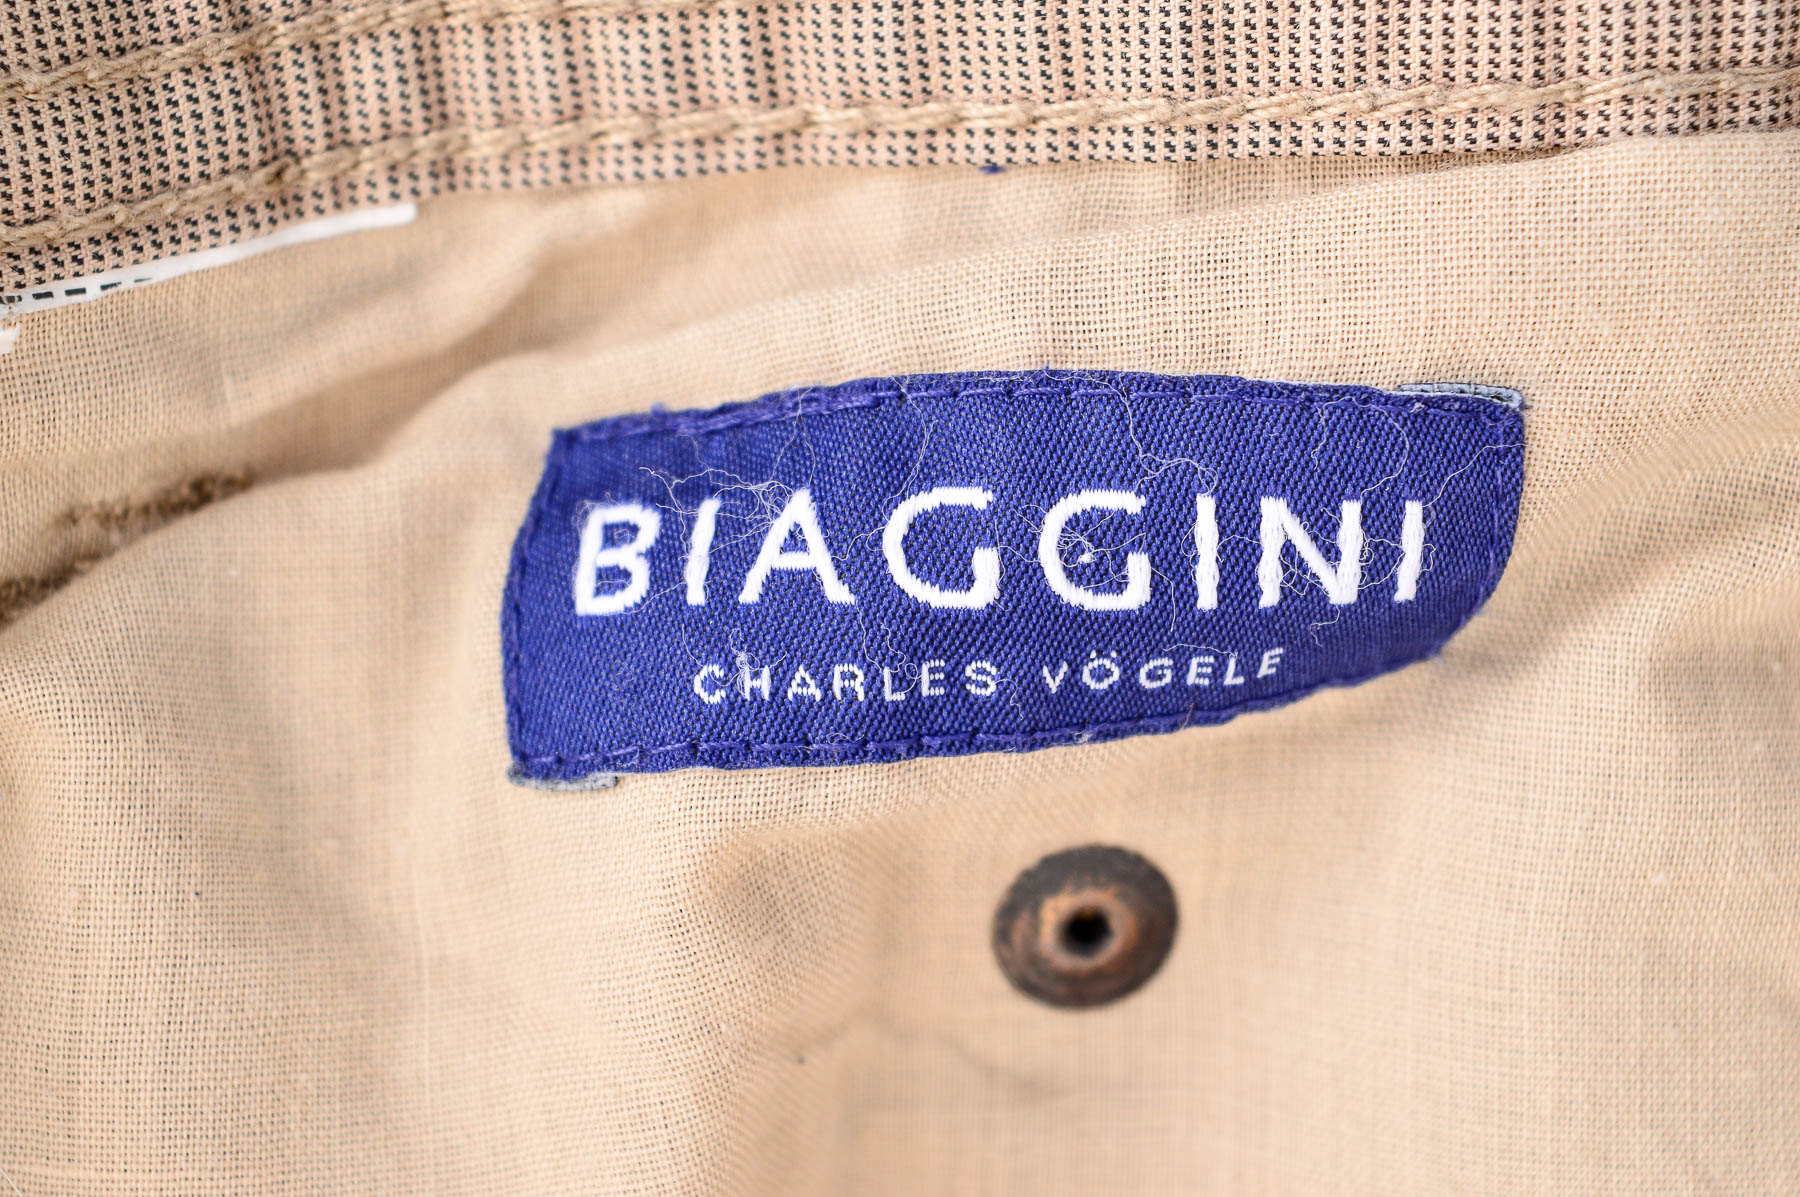 Мъжки панталон - Biaggini - 2